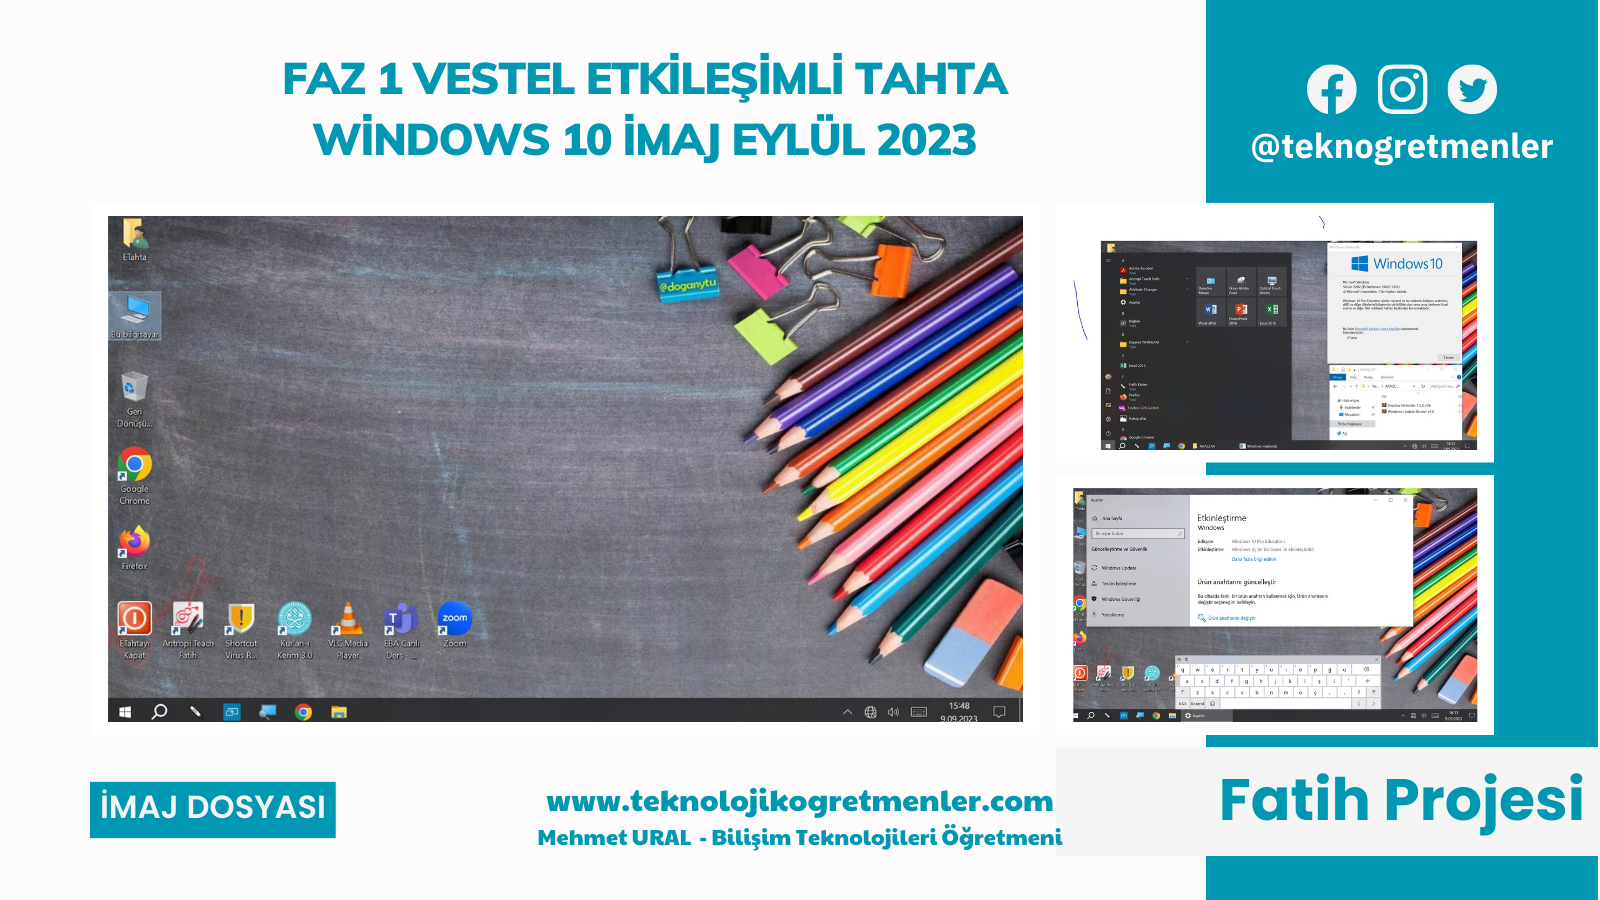 Faz 1 Vestel Etkileşimli Tahta Windows 10 İmajı – Eylül 2023